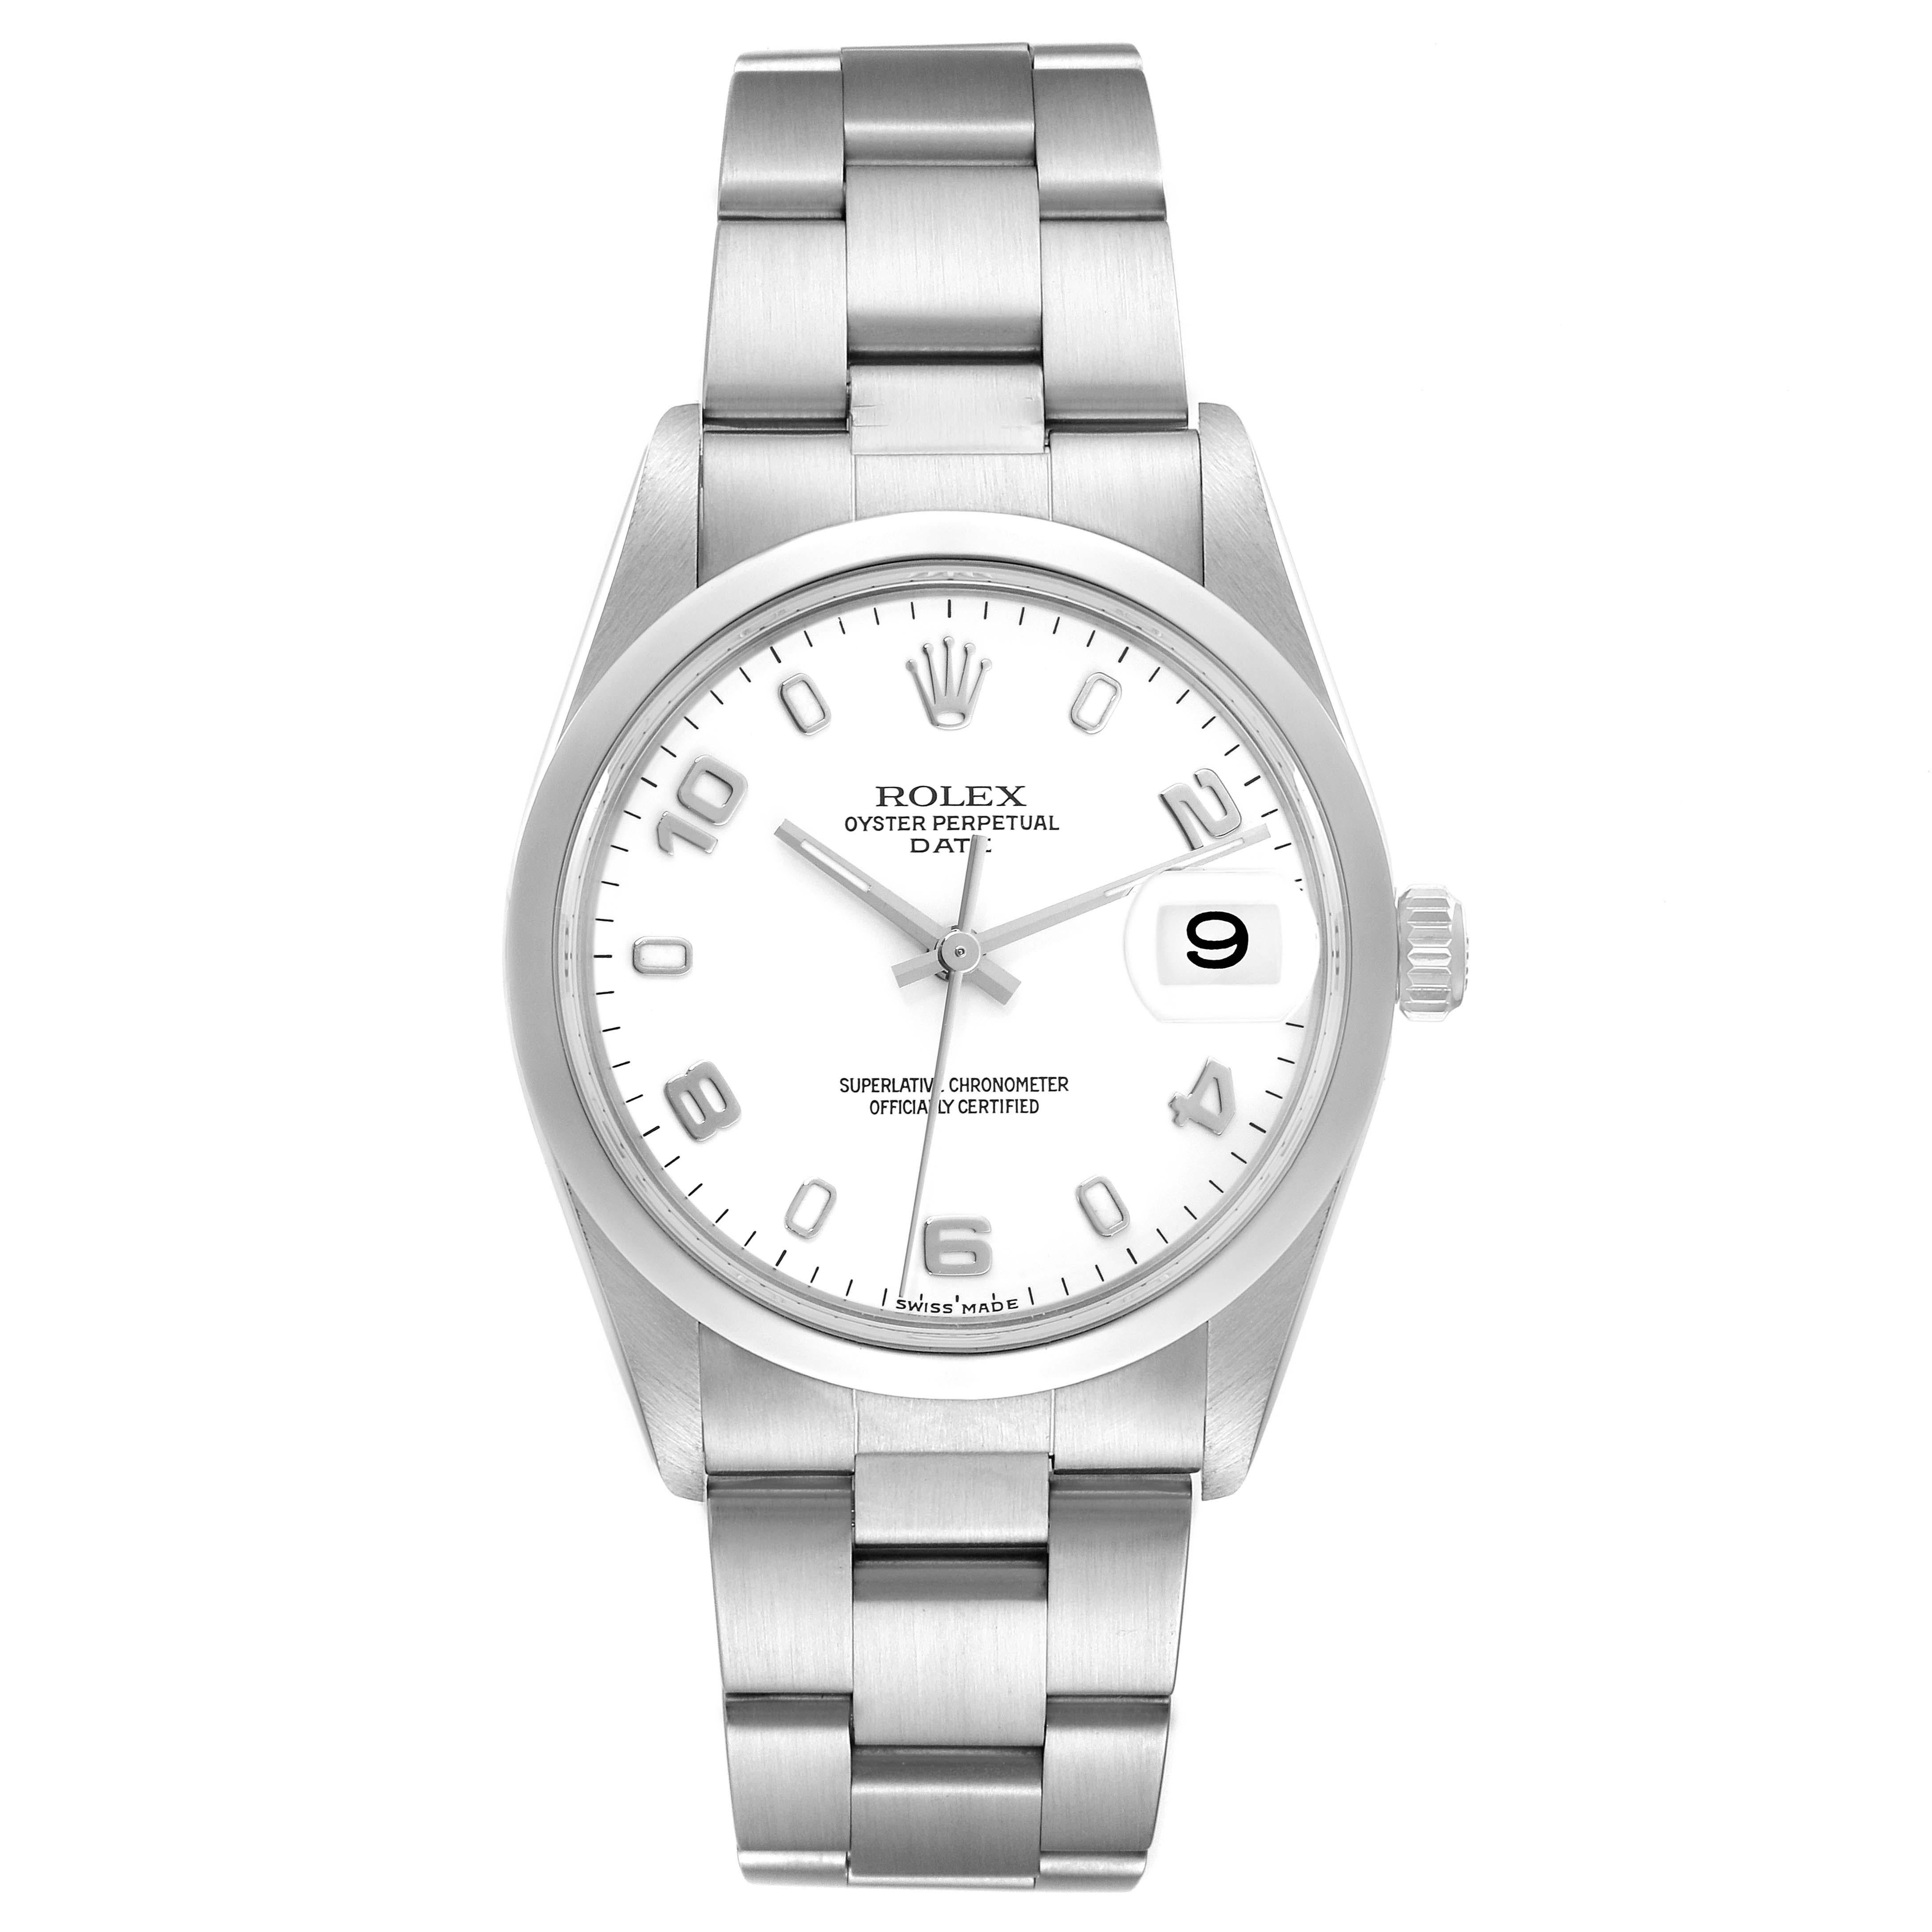 Rolex Date White Dial Oyster Bracelet Steel Mens Watch 15200. Mouvement à remontage automatique certifié officiellement chronomètre. Boîtier oyster en acier inoxydable de 34.0 mm de diamètre. Logo Rolex sur la couronne. Lunette lisse en acier